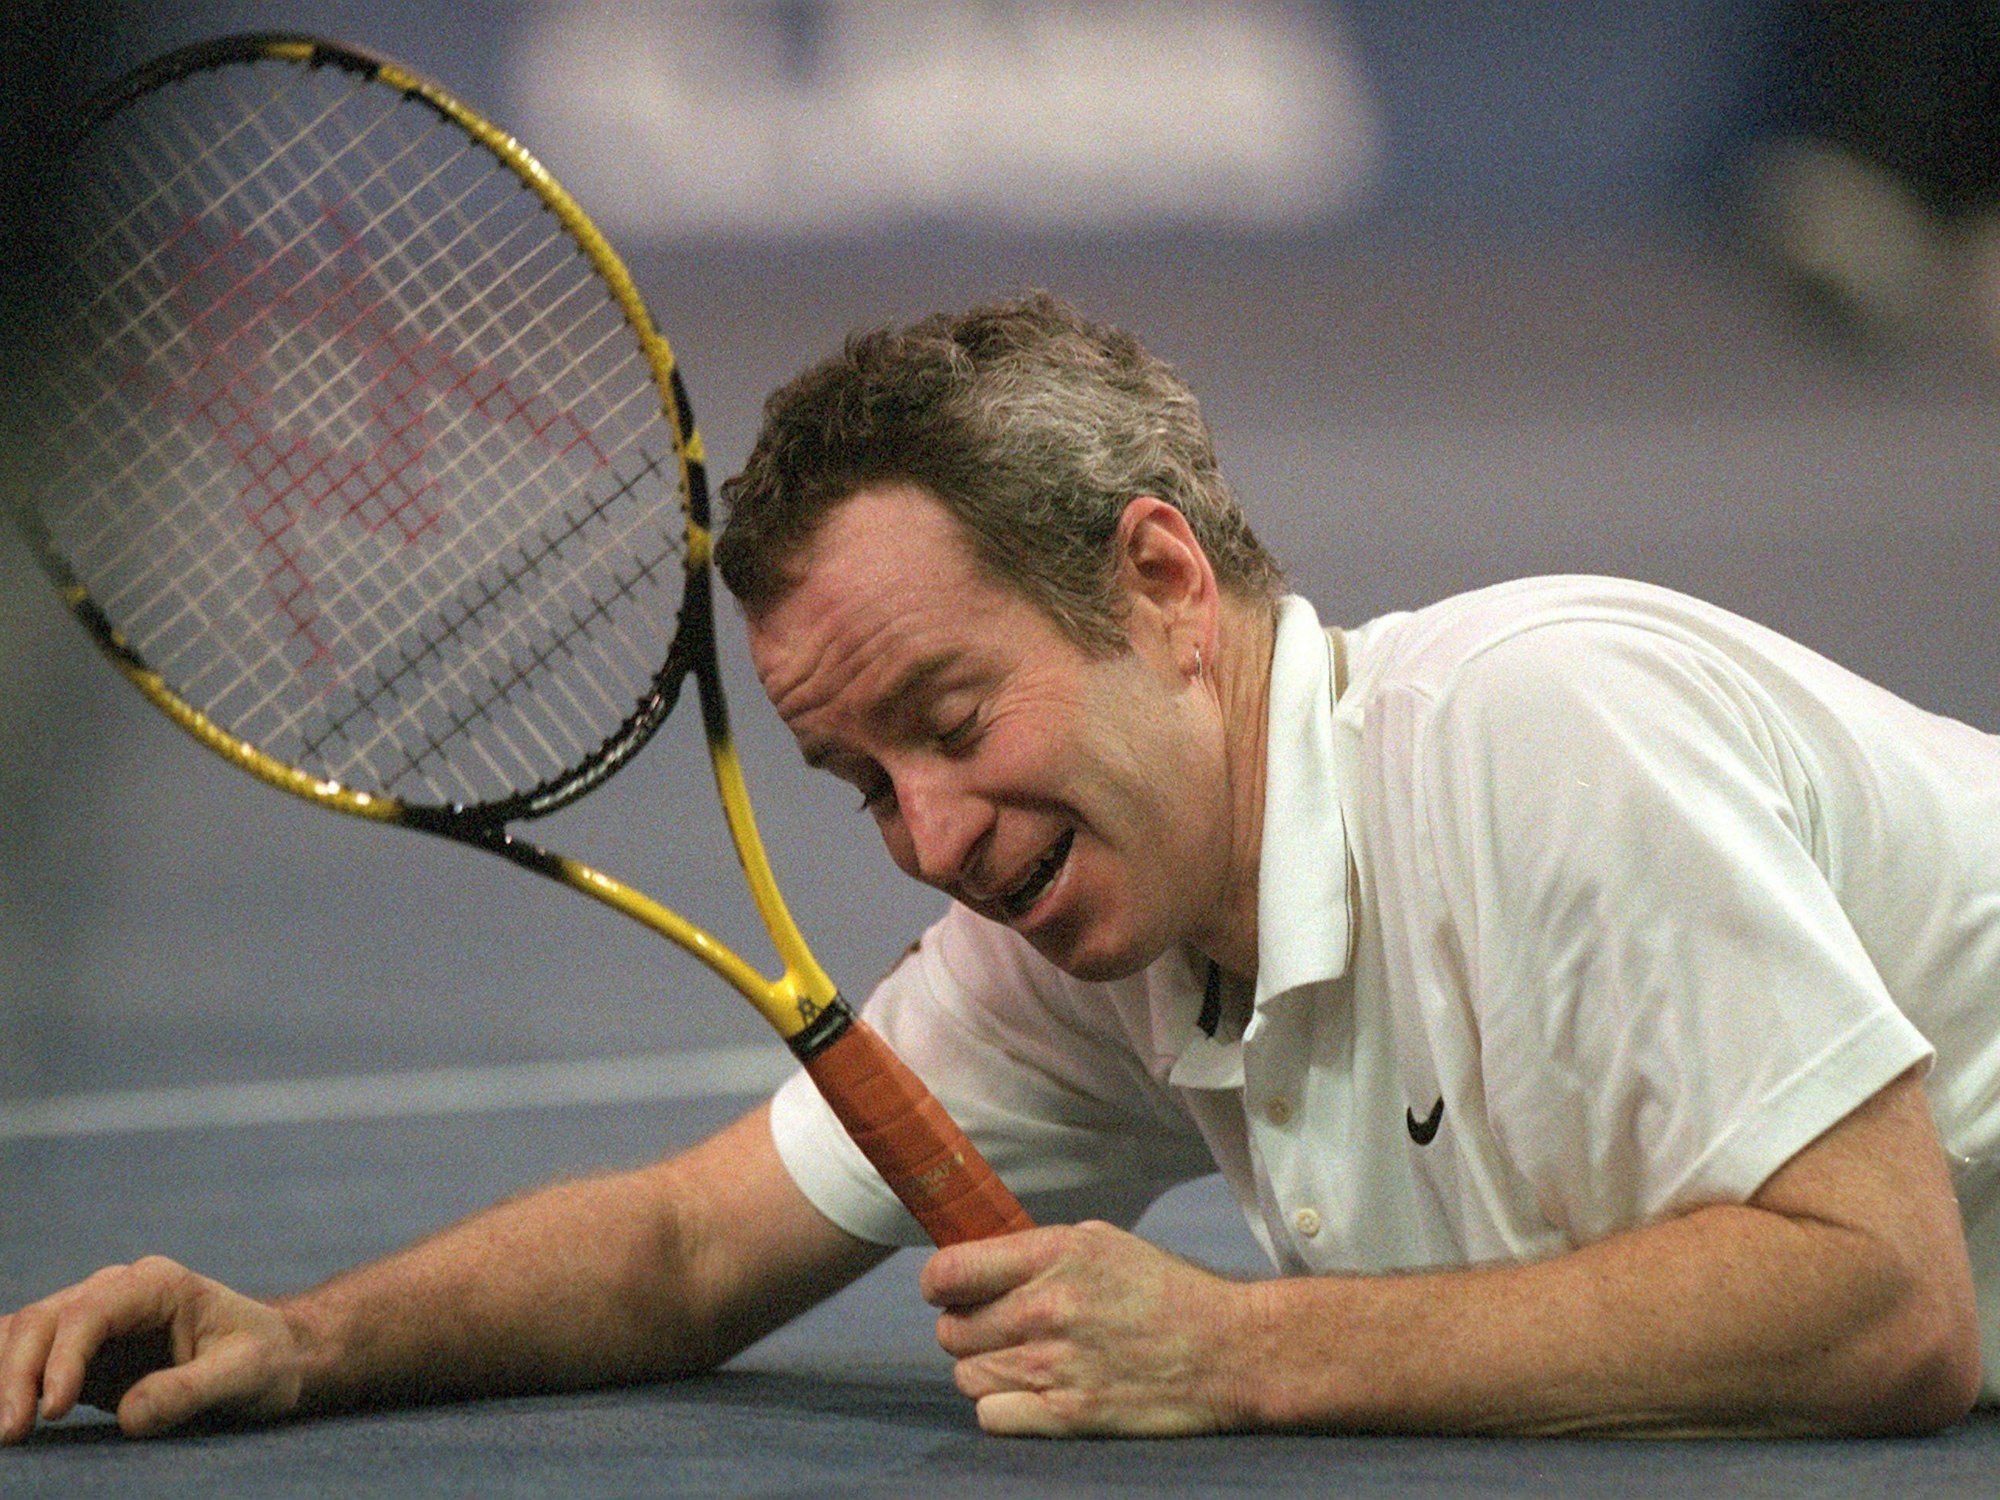 Mit dem Tennisschläger in der Hand liegt der Amerikaner John McEnroe am Boden und lächelt gequält.